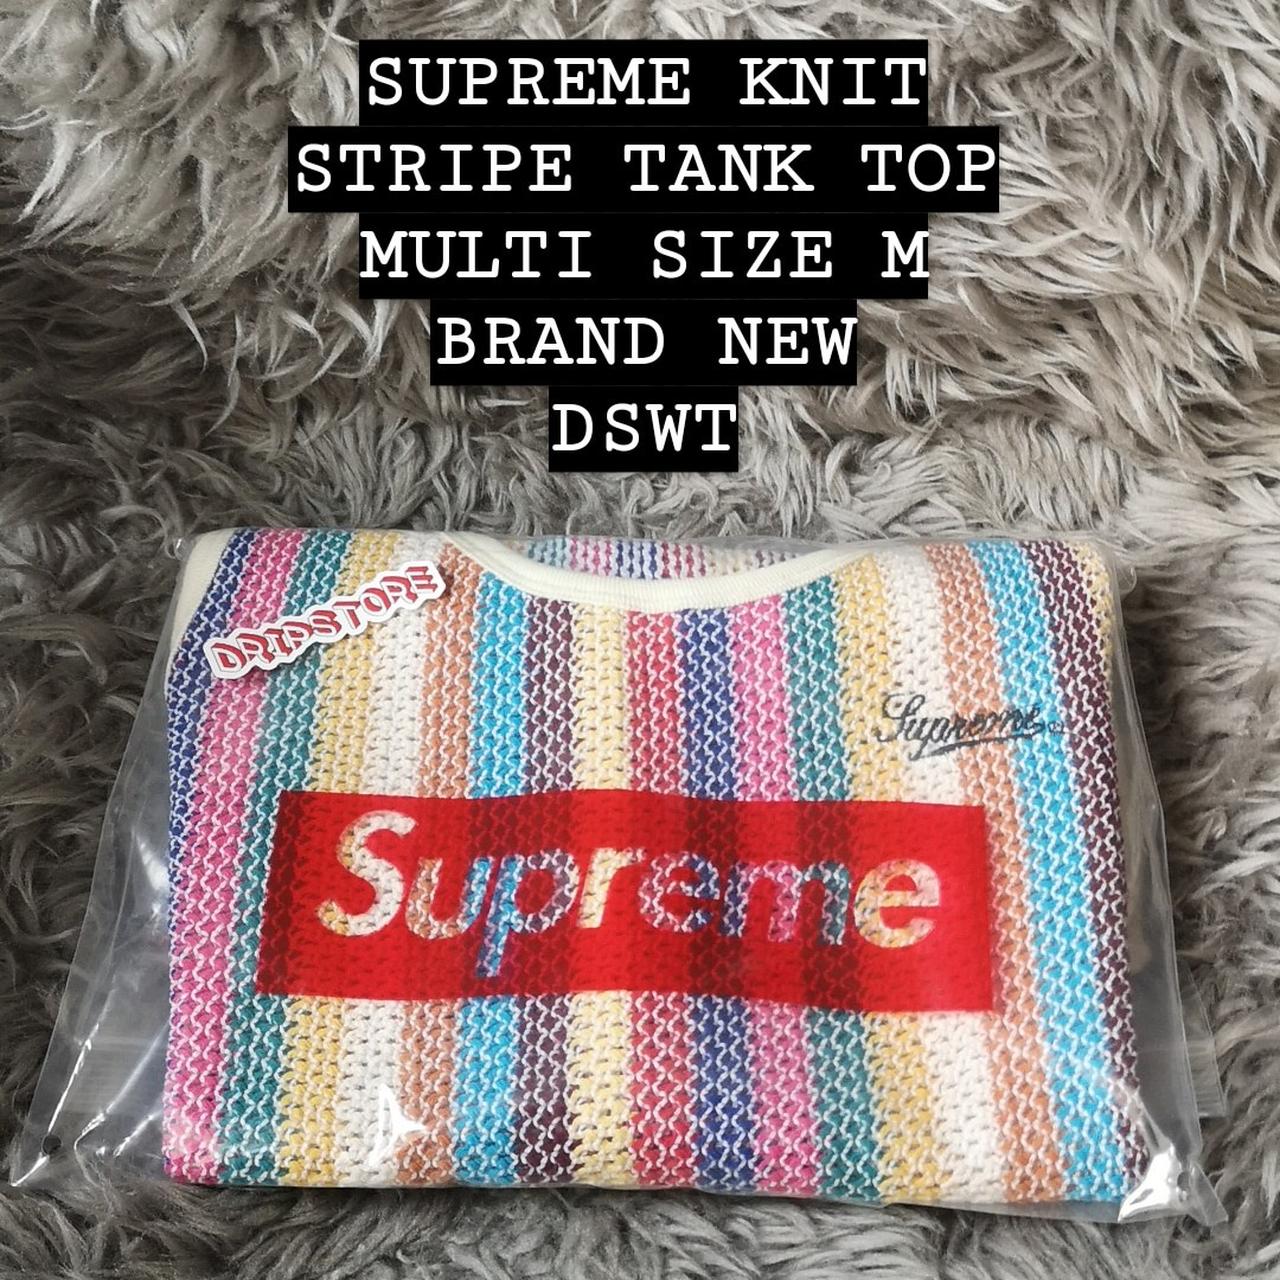 Supreme Knit Stripe Tank Top